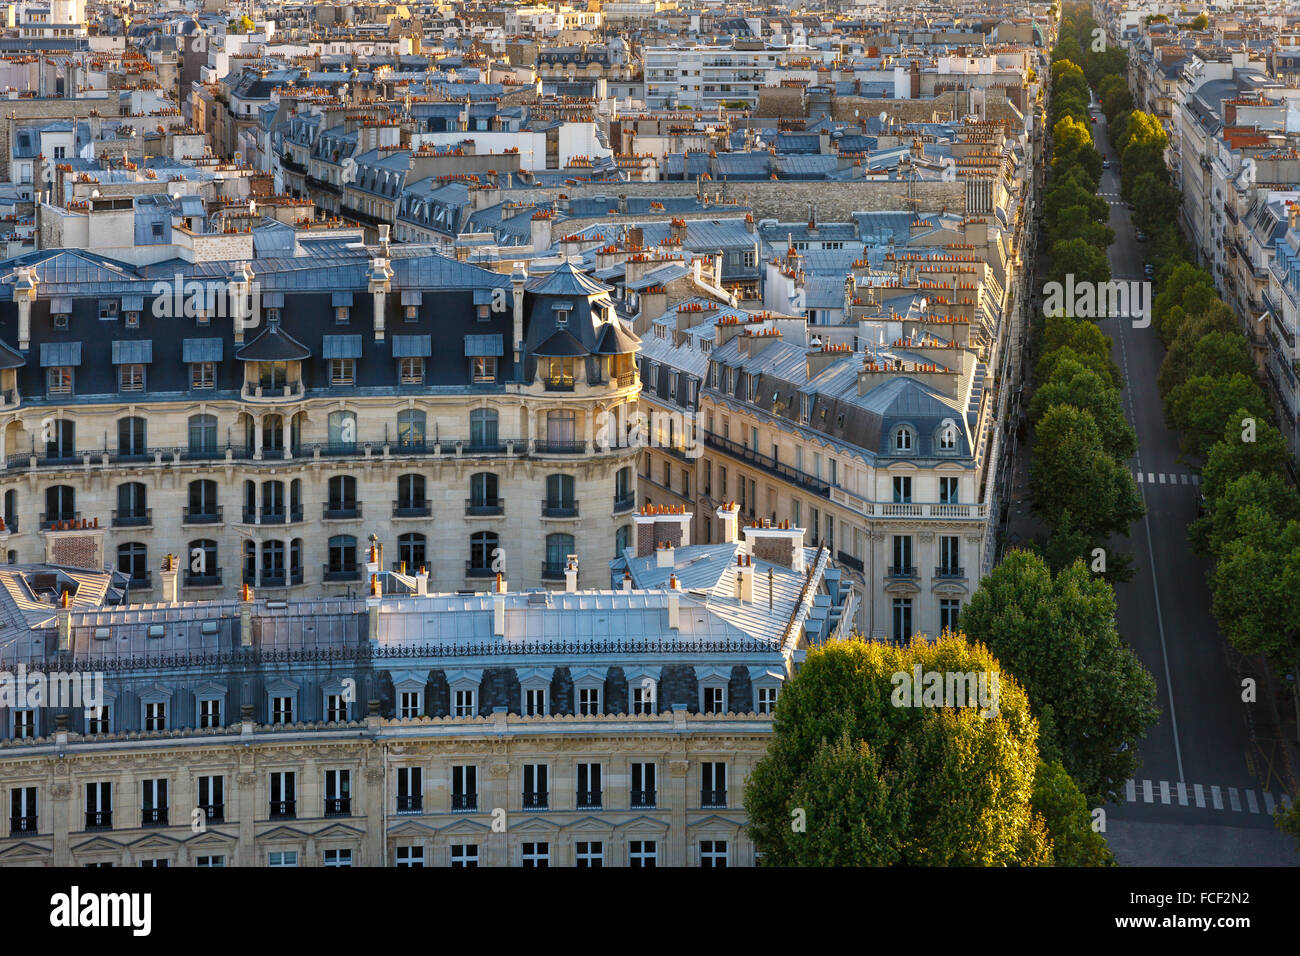 Vue aérienne du 16ème arrondissement de Paris avec ses immeubles haussmanniens, toits de Paris et l'Avenue Victor Hugo Banque D'Images